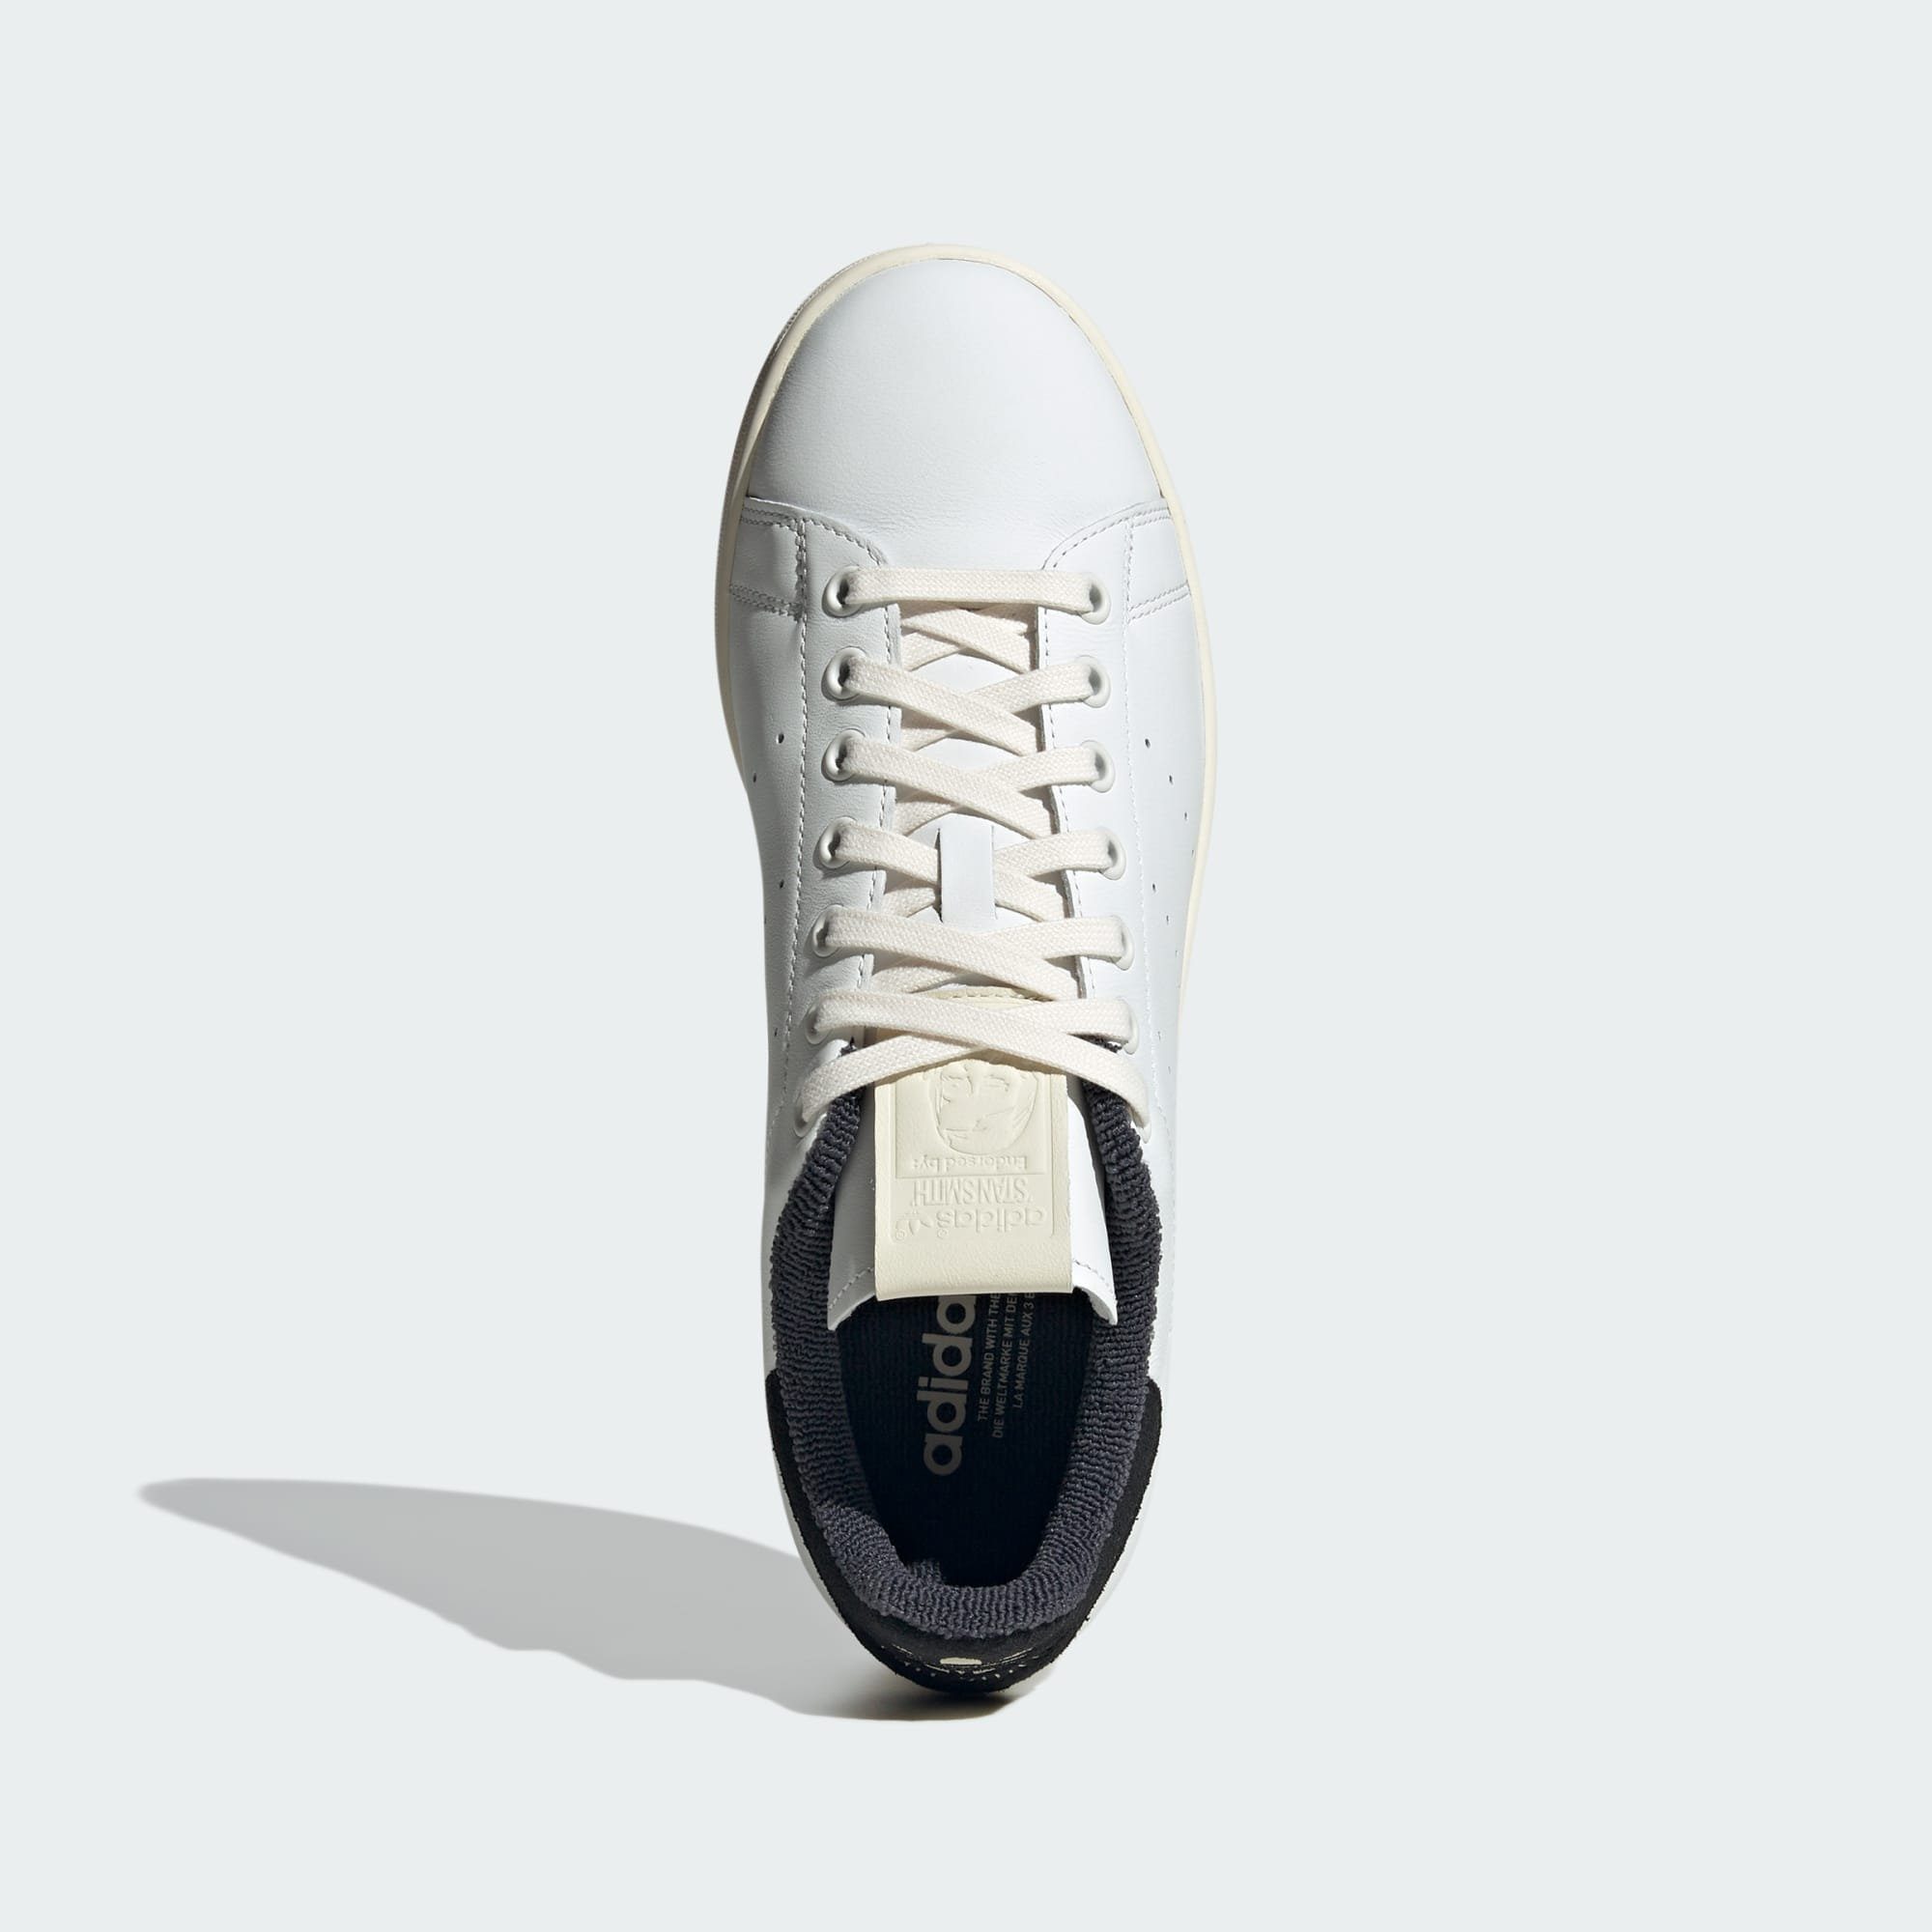 SCHUH Sneaker / adidas White / Cream Core Black SMITH STAN Originals Core White